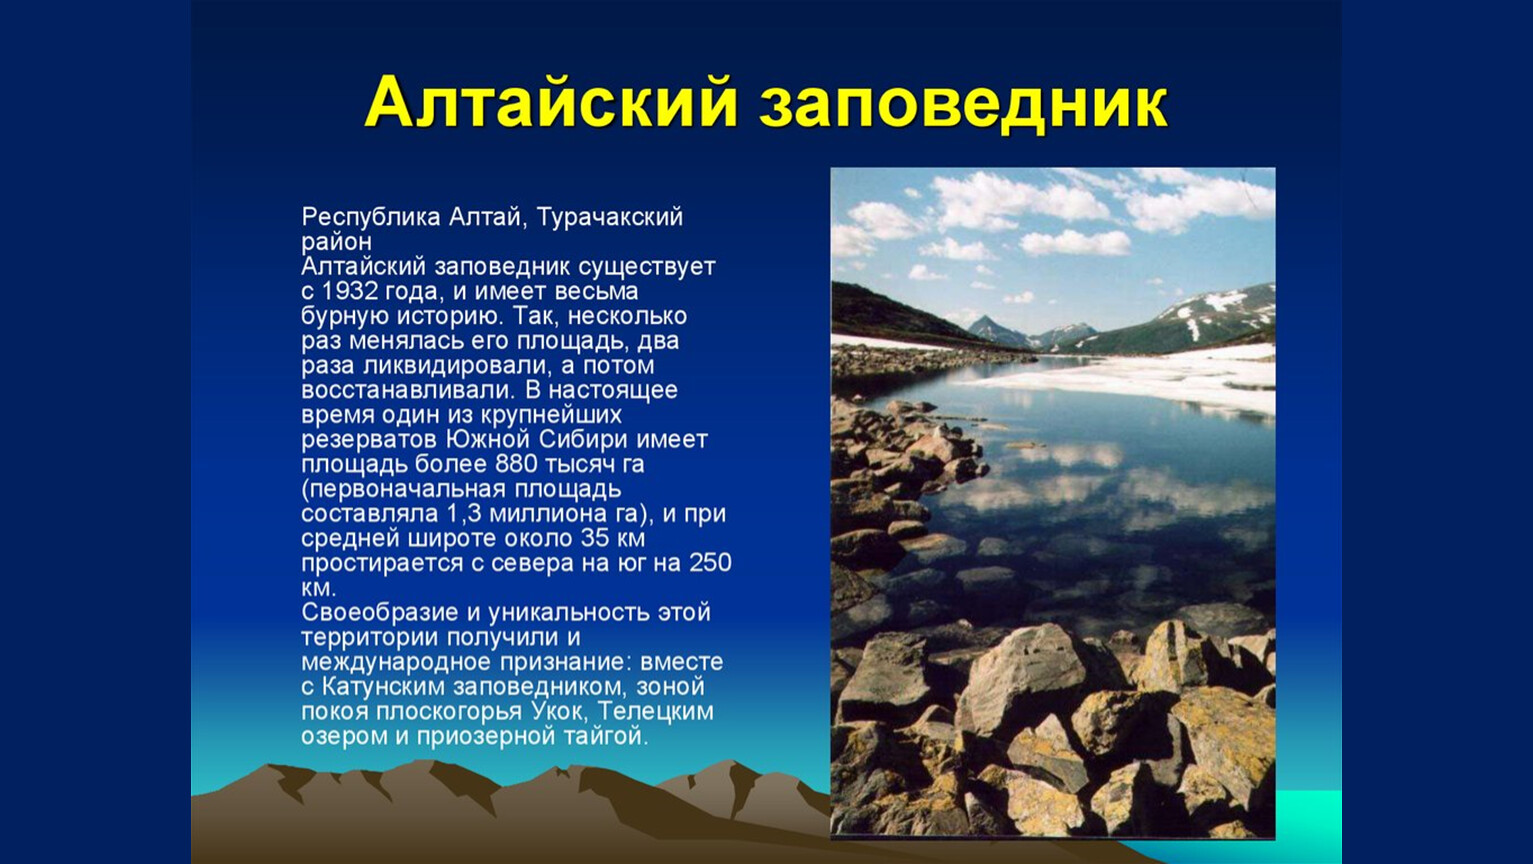 Сообщение о заповеднике Алтайского края